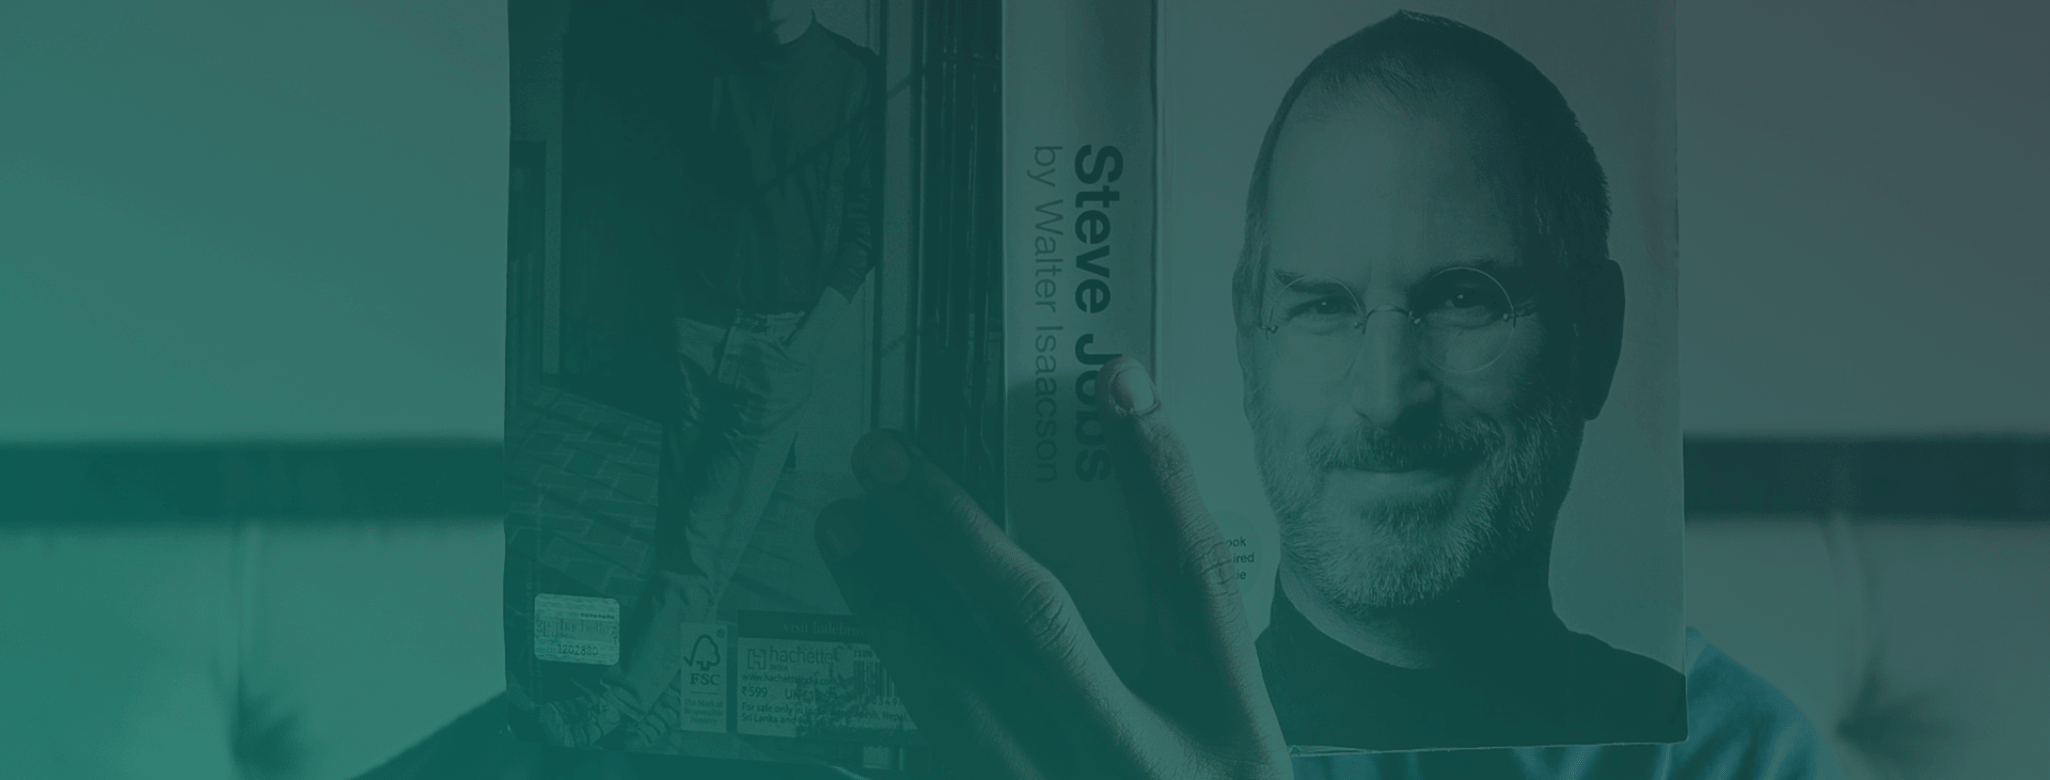 How Does The Cv Of Steve Jobs Look Like